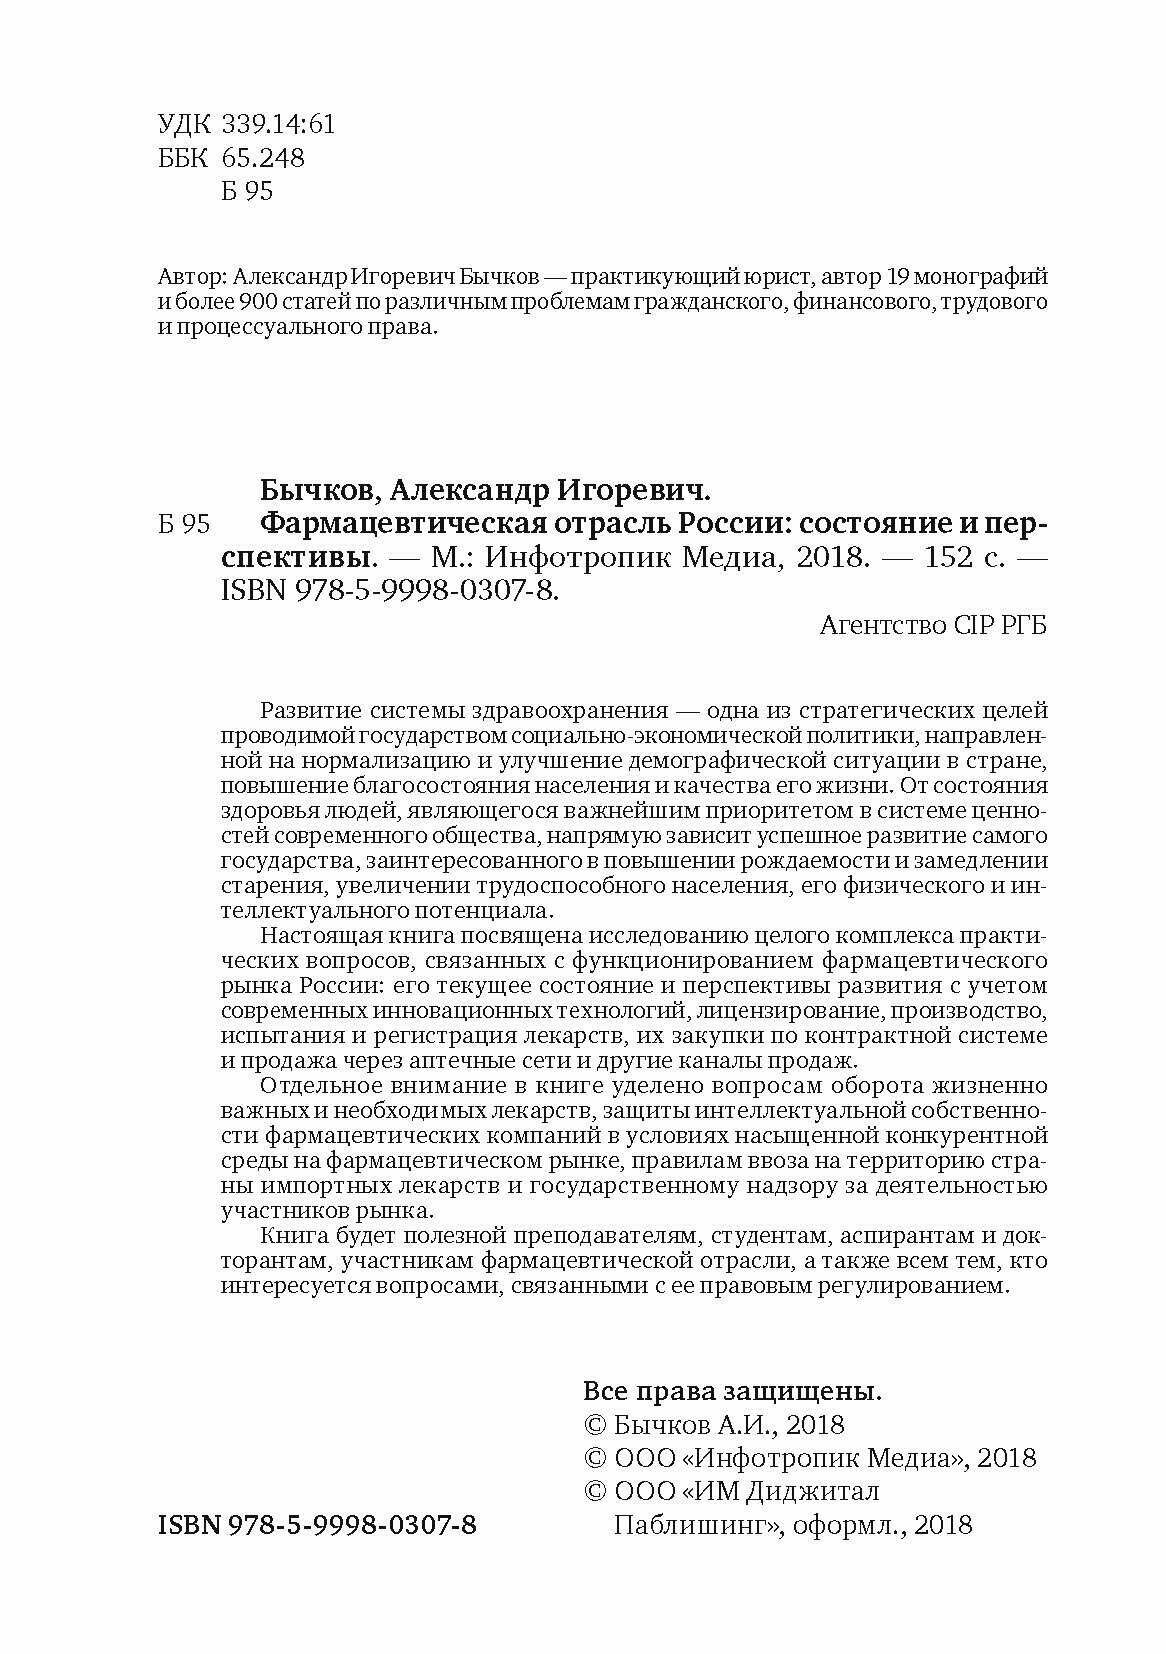 Фармацевтическая отрасль России: состояние и перспективы - фото №6